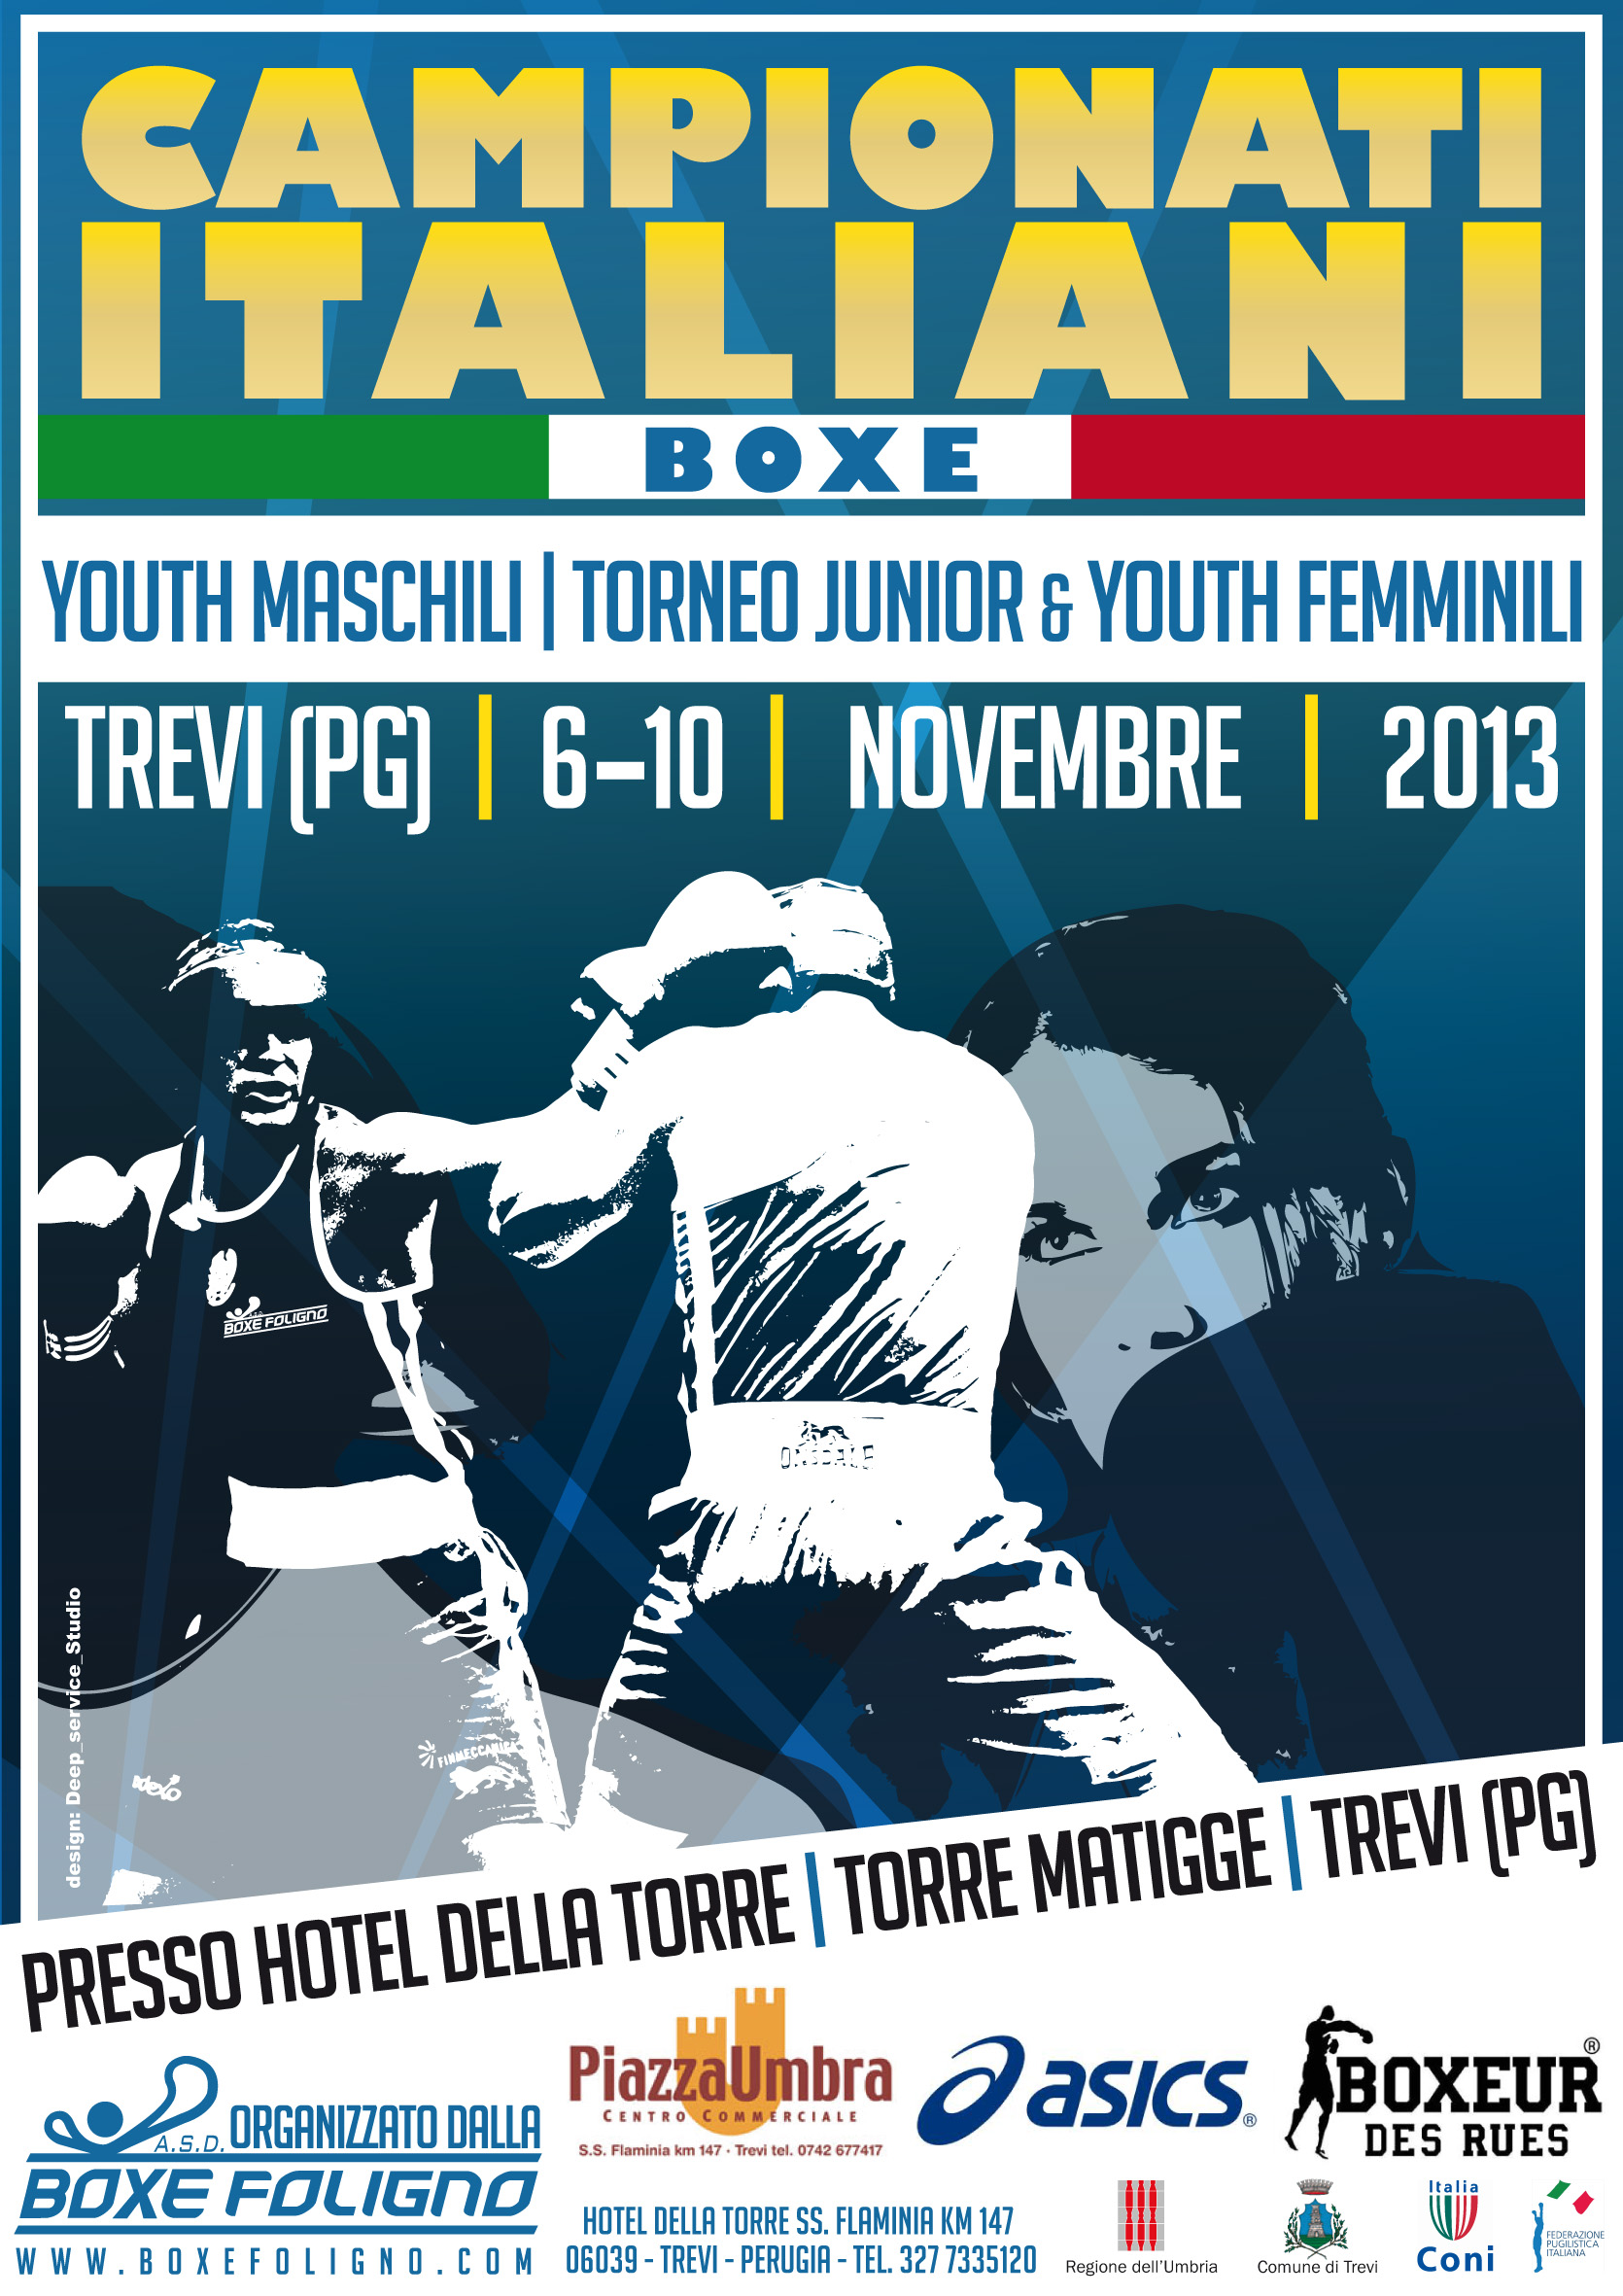 Campionati Italiani Youth 2013 - Torneo Nazionale Femminile Junior-Youth: a Trevi (PG) dal 6 al 10 novembre